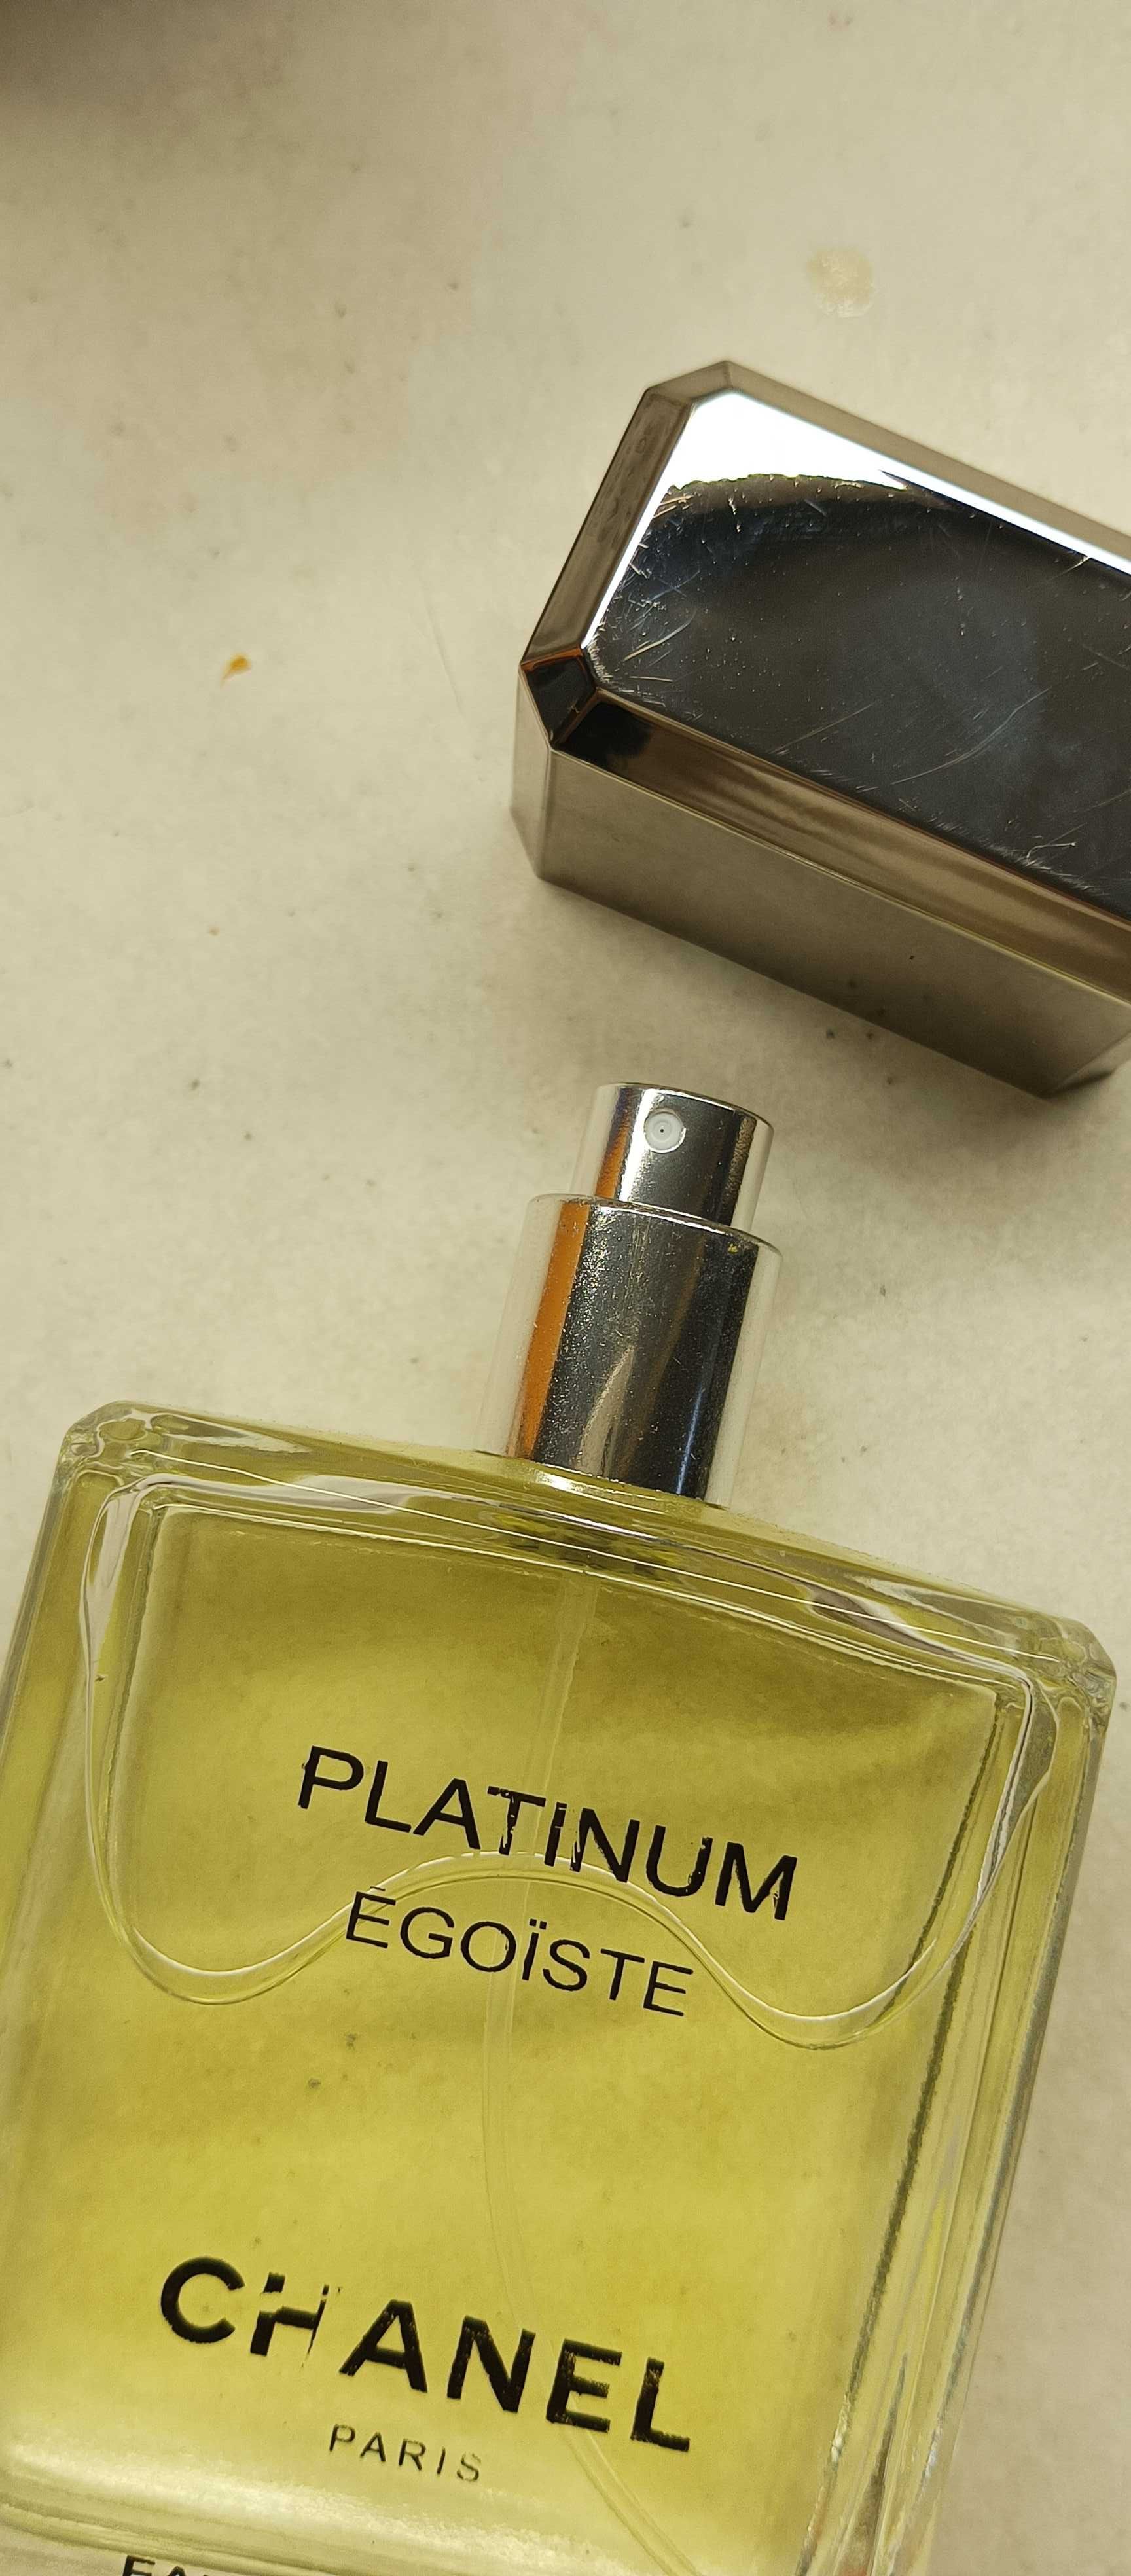 Chanel platinum egoiste pour homme edt 100 ml .